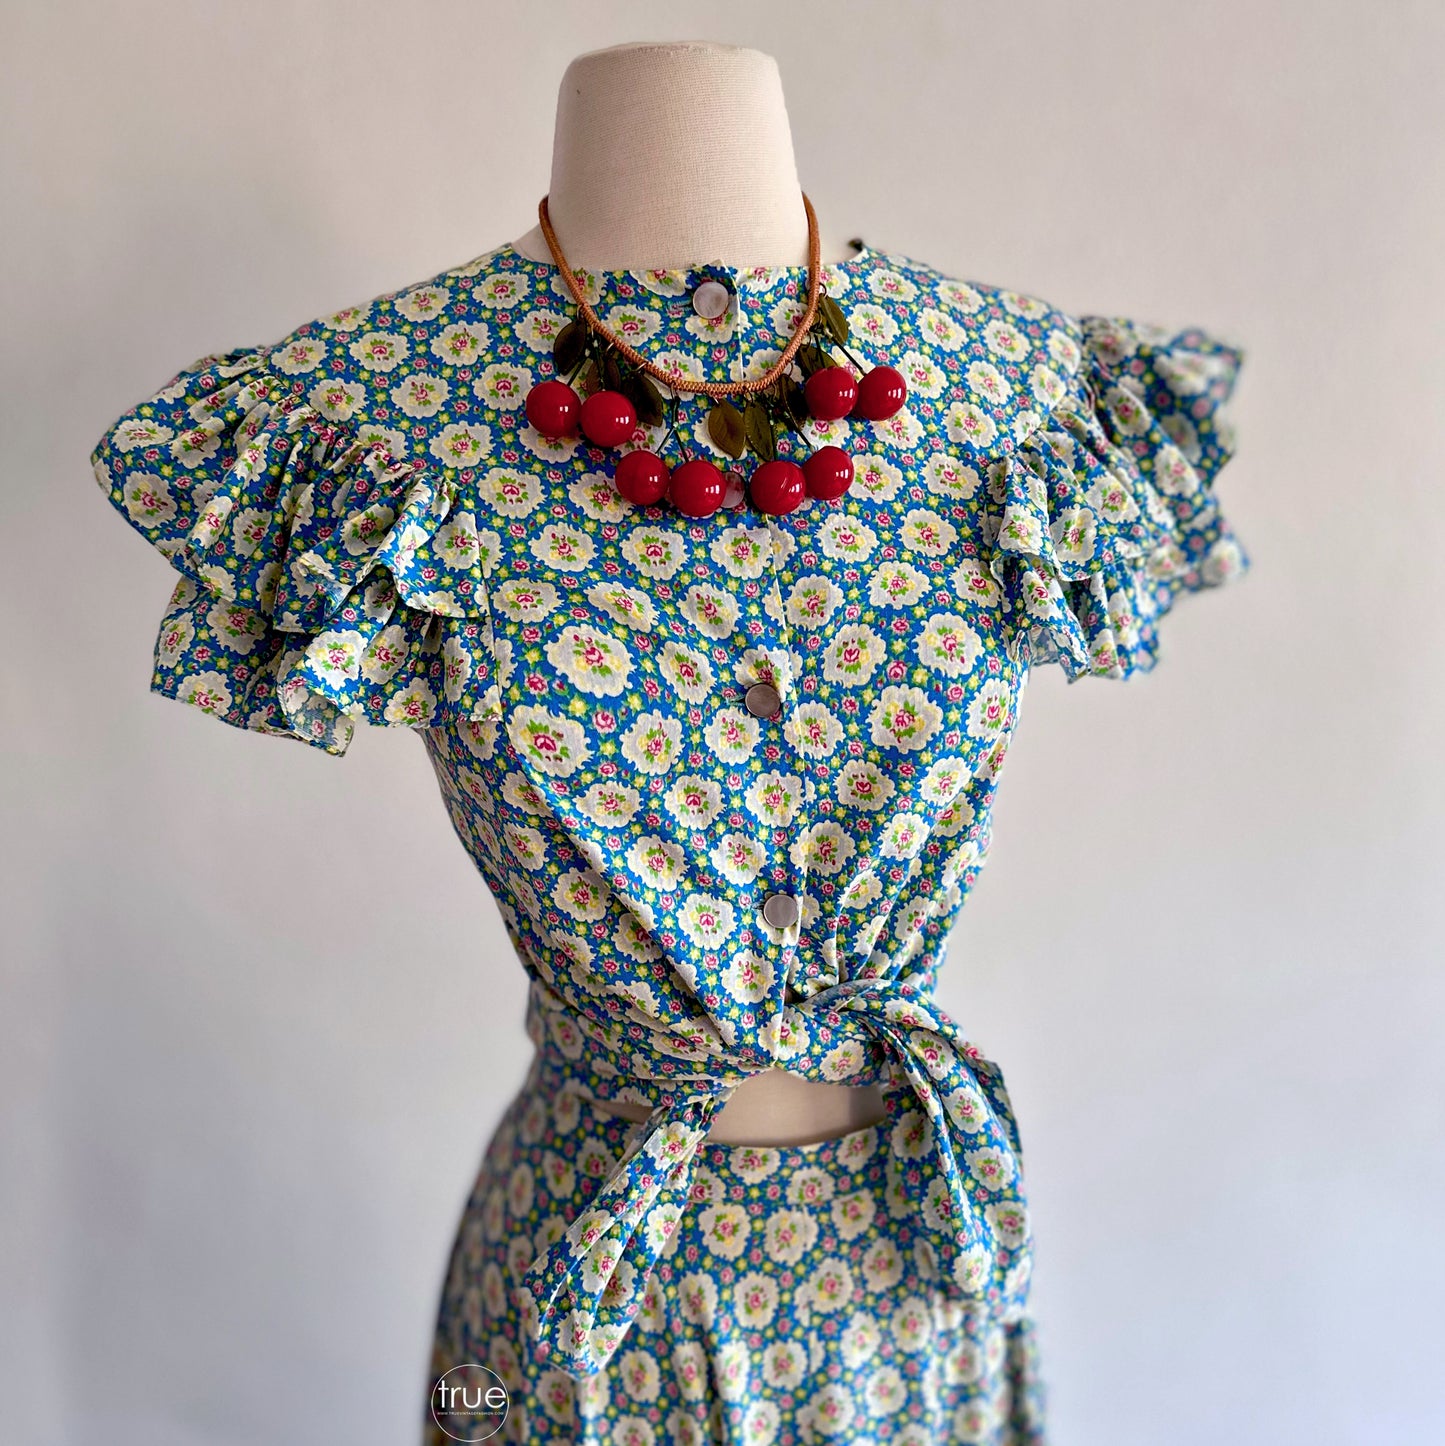 vintage 1930's dress set ...best NEIMAN MARCUS by WESTWAY-DALLAS 2 pc skirt & top cotton calico floral dress set